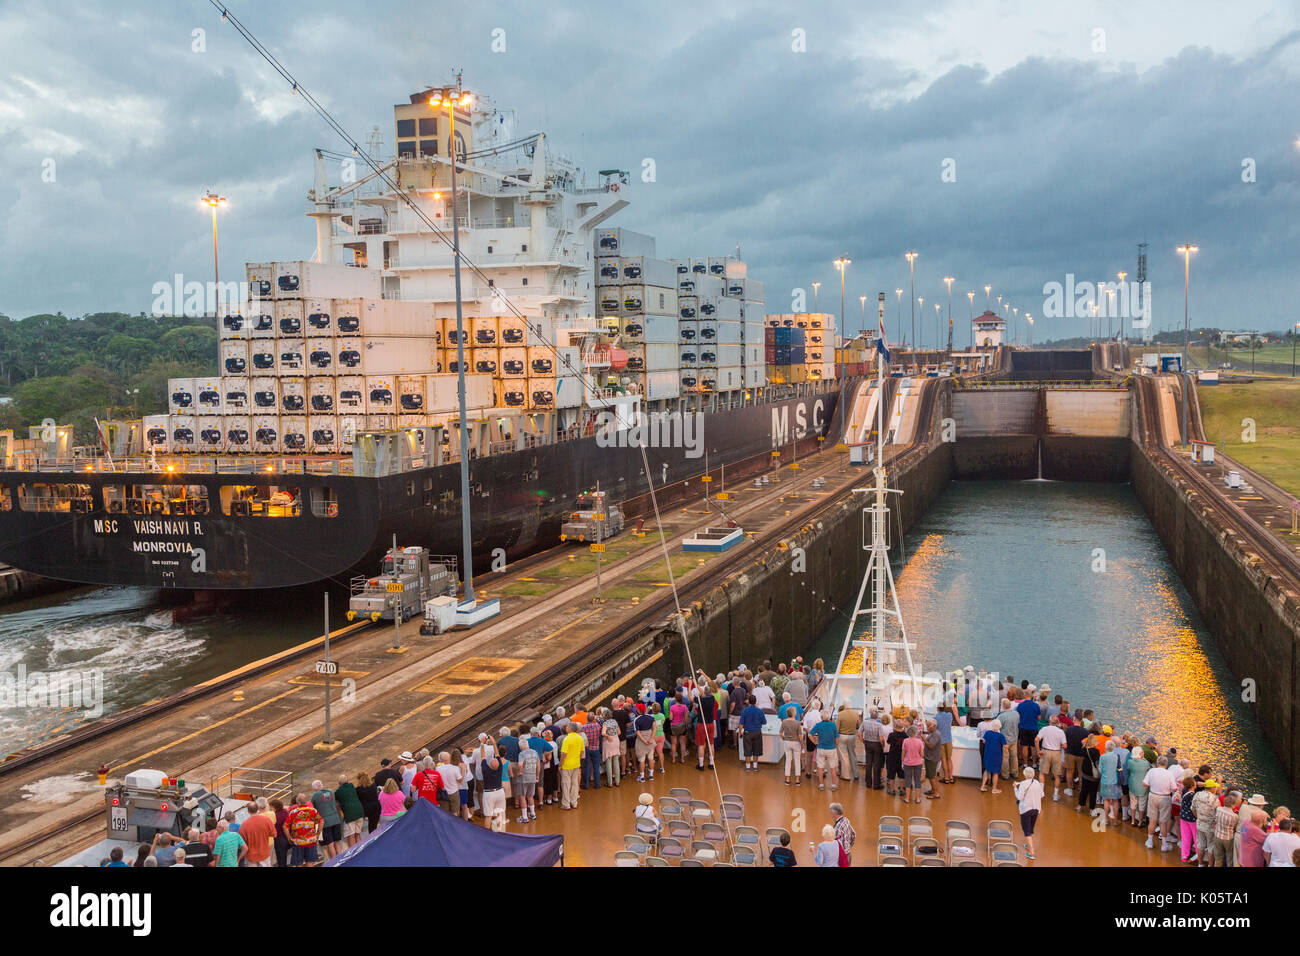 Canale di Panama, Panama. Contenitore nave entrando nel primo blocco, Caraibi, dirigendosi verso il Lago di Gatun, i passeggeri sulla nave da crociera a guardare. Foto Stock